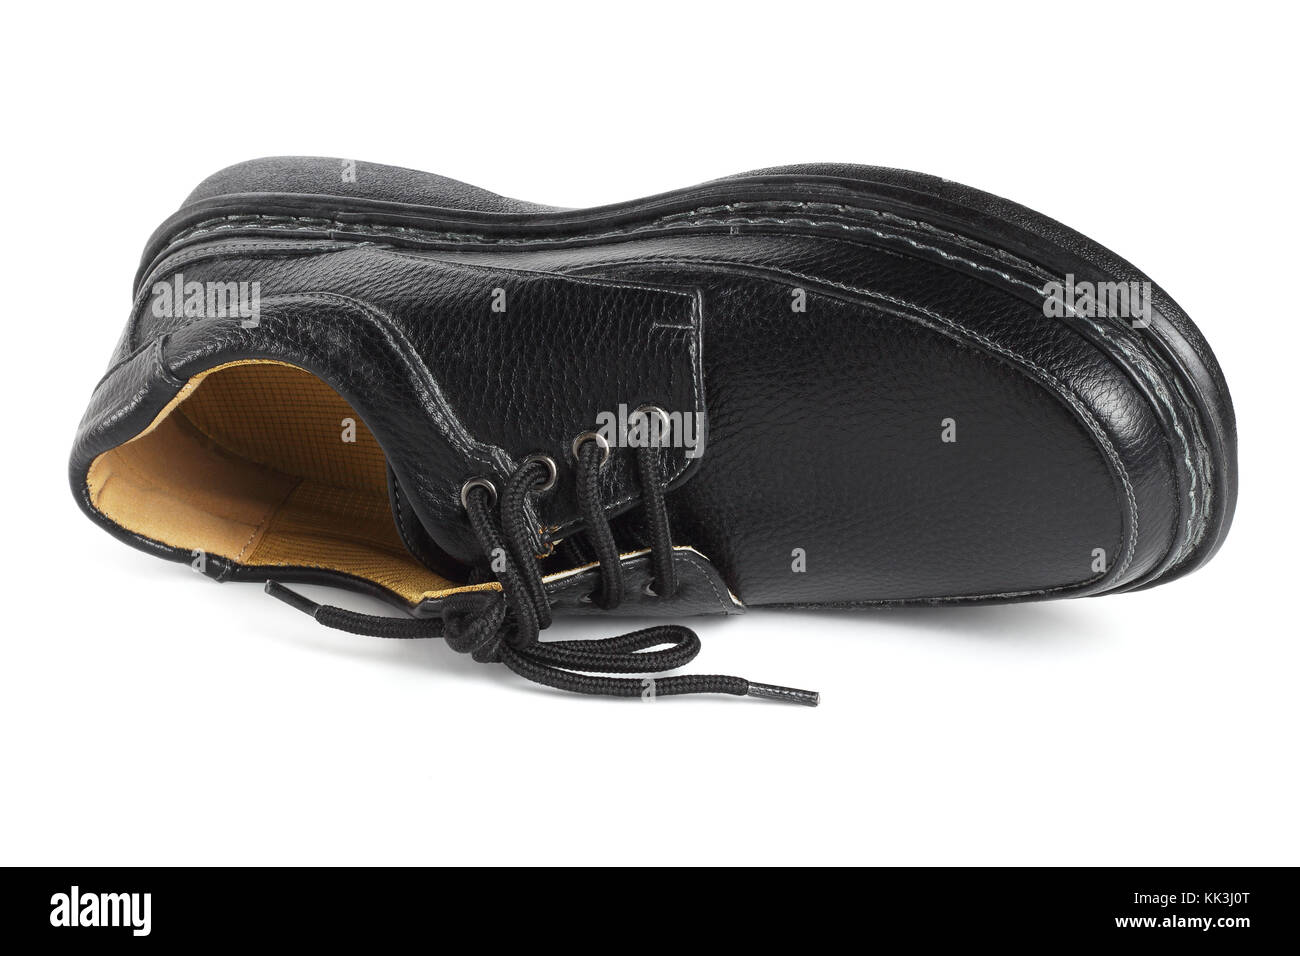 Black Leather Shoe Lying on White Background Stock Photo